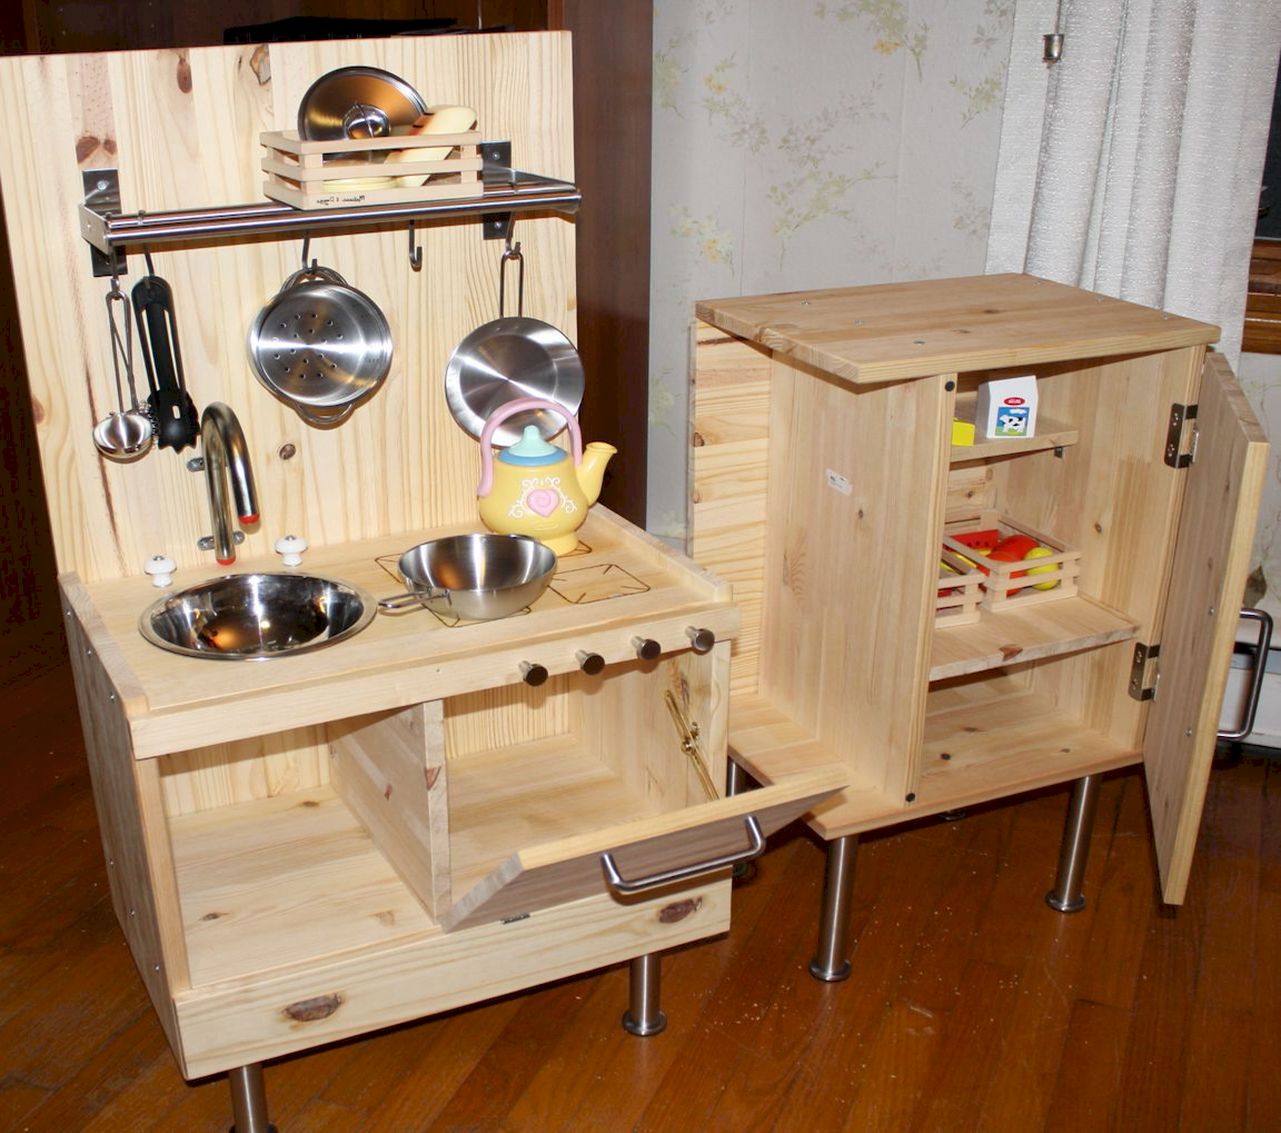 Small Kitchenette Sets photo - 3